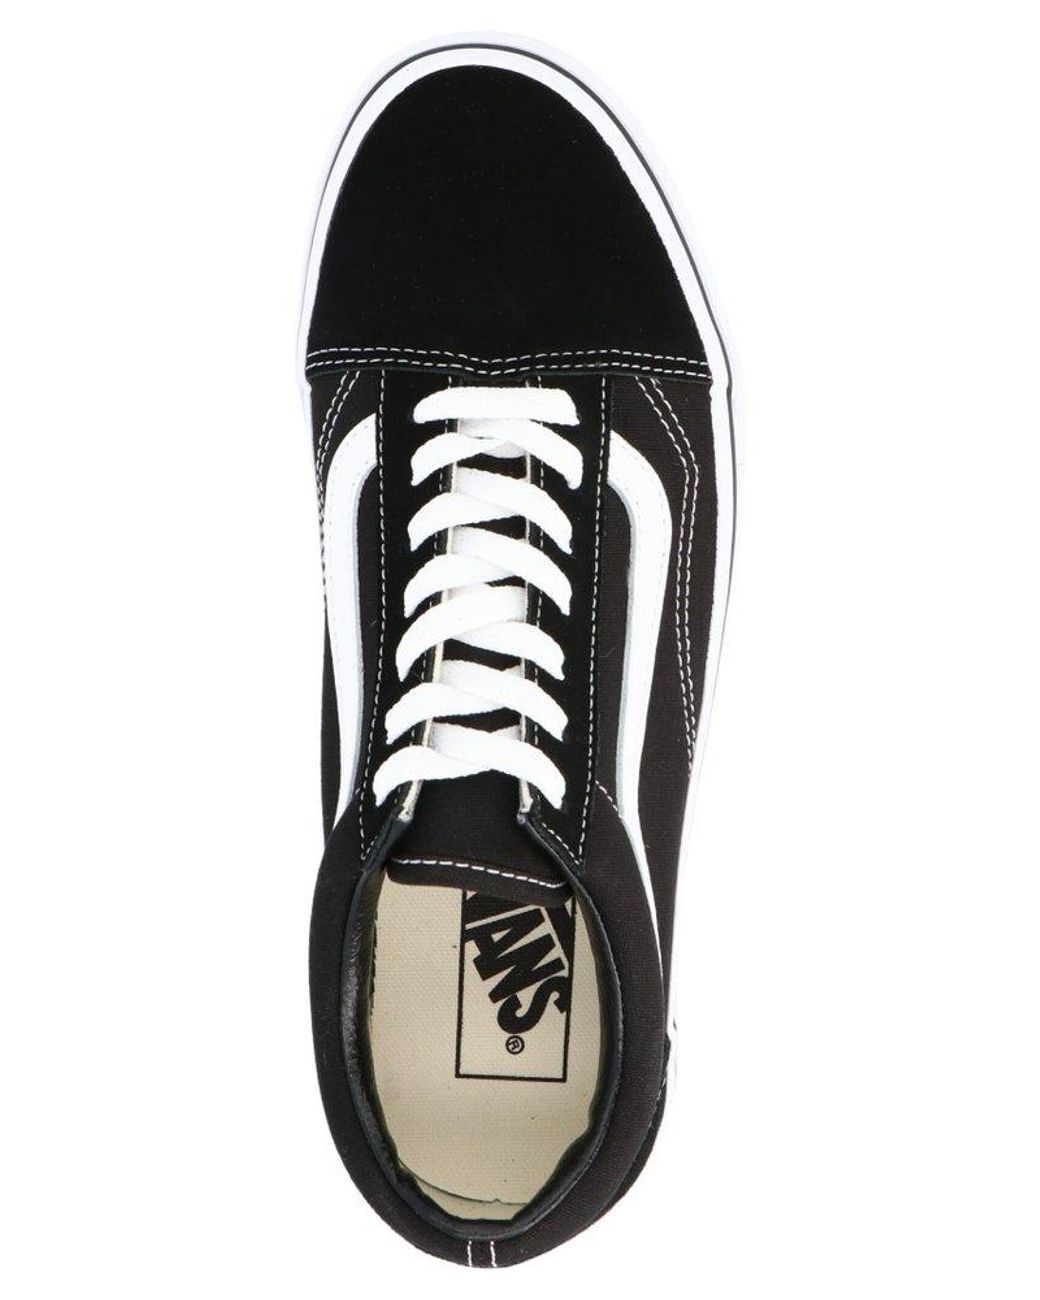 Vans Leather Old Skool Platform Sneakers in Black for Men - Save 6% | Lyst